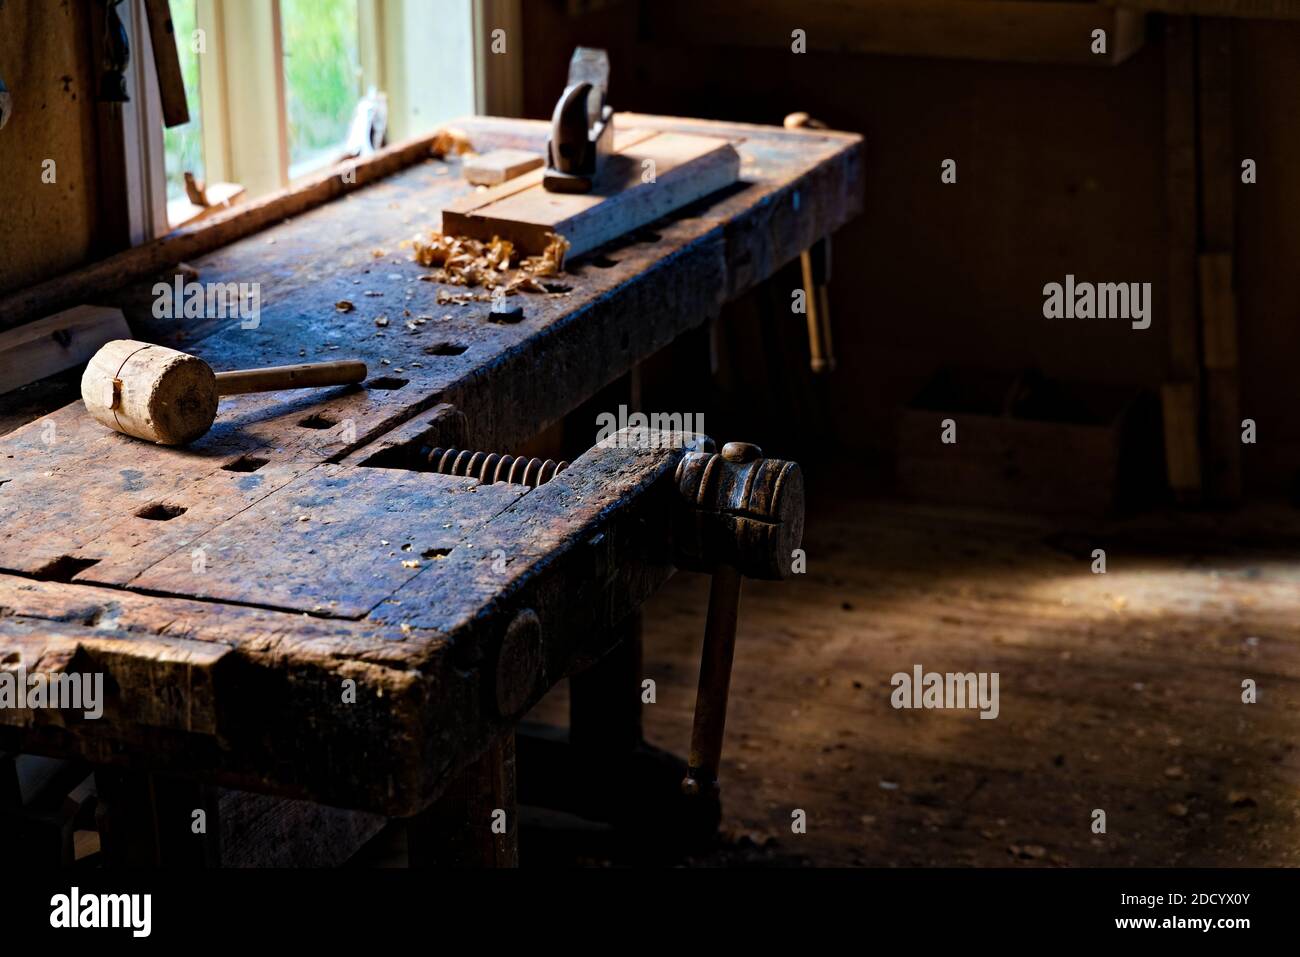 Atelier de menuisiers avec des outils et des sculptures en bois parsemées sur la table et la lumière naturelle qui se diffuse. Banque D'Images